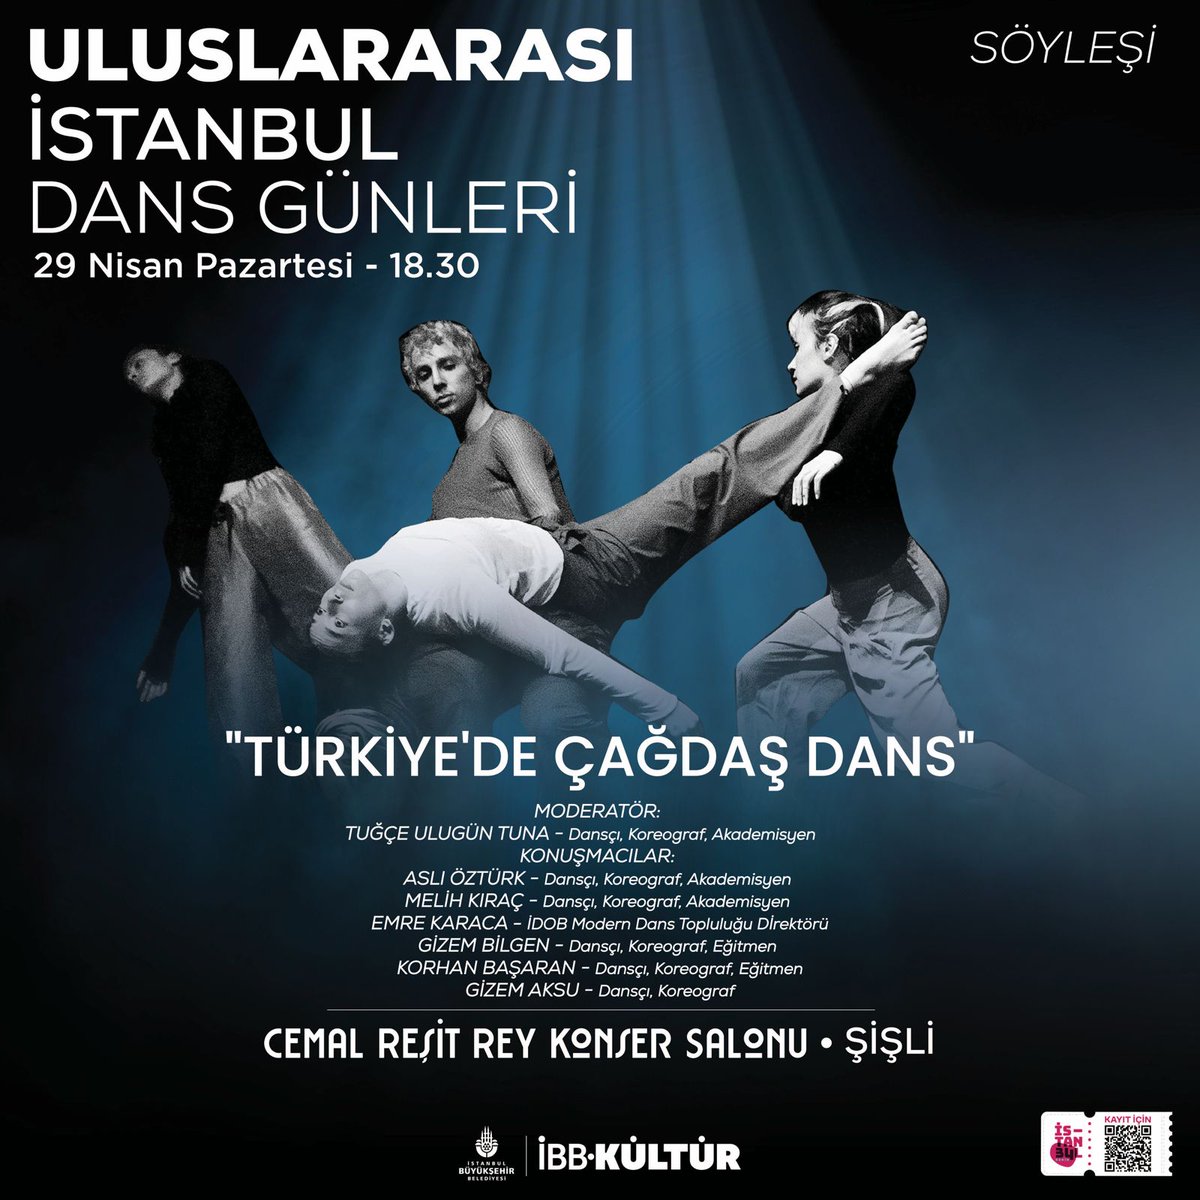 Uluslararası İstanbul Dans Günleri ile 22 Nisan – 2 Mayıs tarihleri arasında dansın coşkusu tüm şehri saracak! Ücretsiz biletlerinizi İstanbul Senin’den temin edebilir, gösteri ve etkinliklerin ayrıntılarına kultursanat.istanbul adresli web sitemizden ulaşabilirsiniz. #ibb…